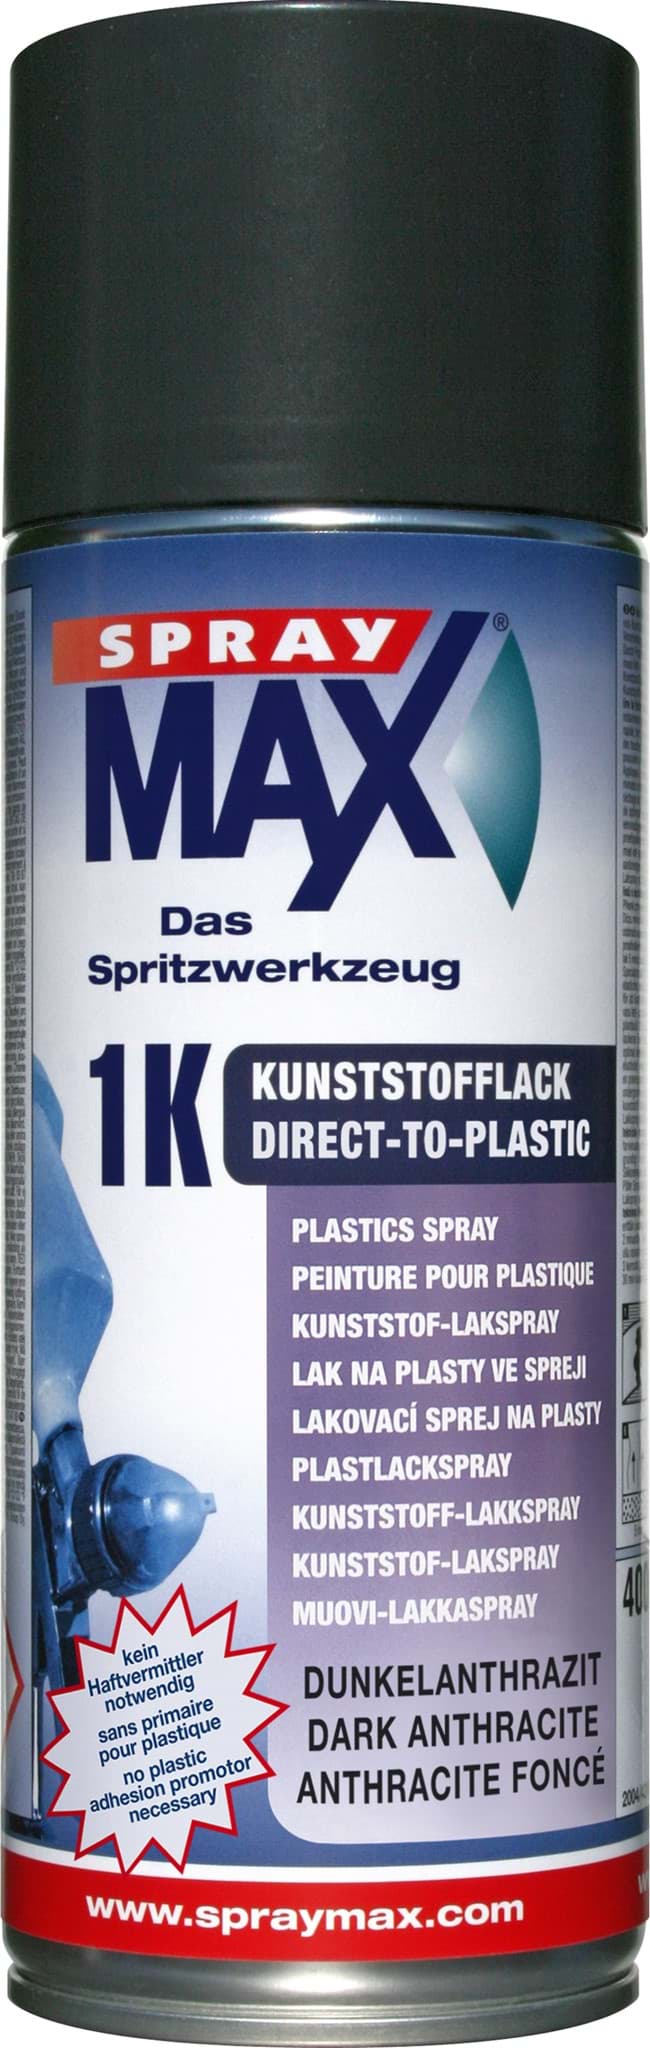 Bild von SprayMax 1K DTP-Kunststofflack Dunkelanthrazit 400ml 680045